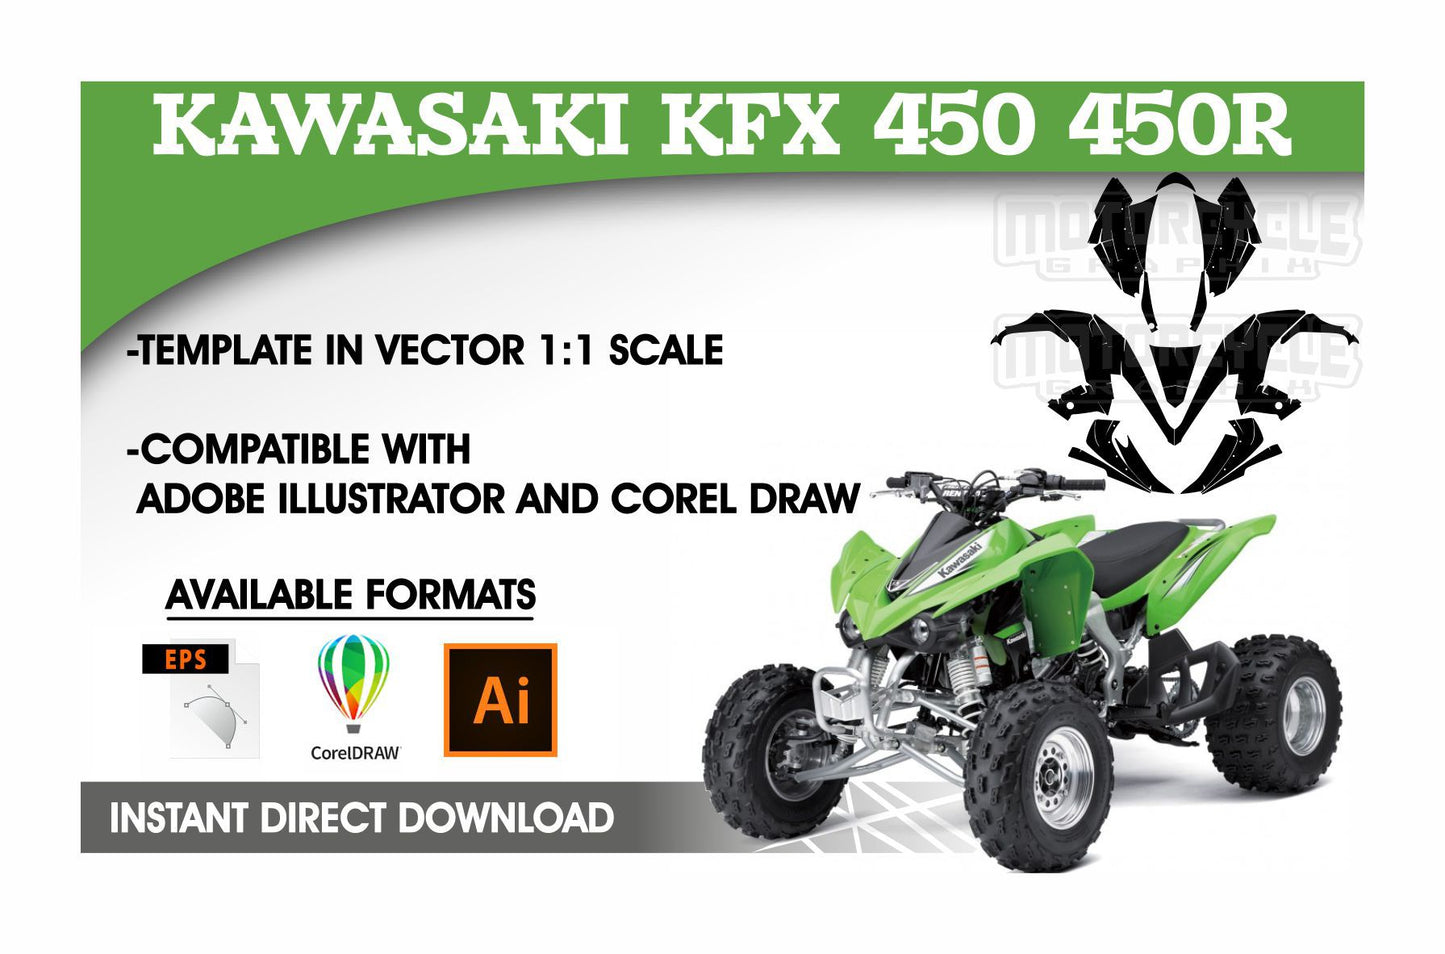 KAWASAKI KFX 450 450R